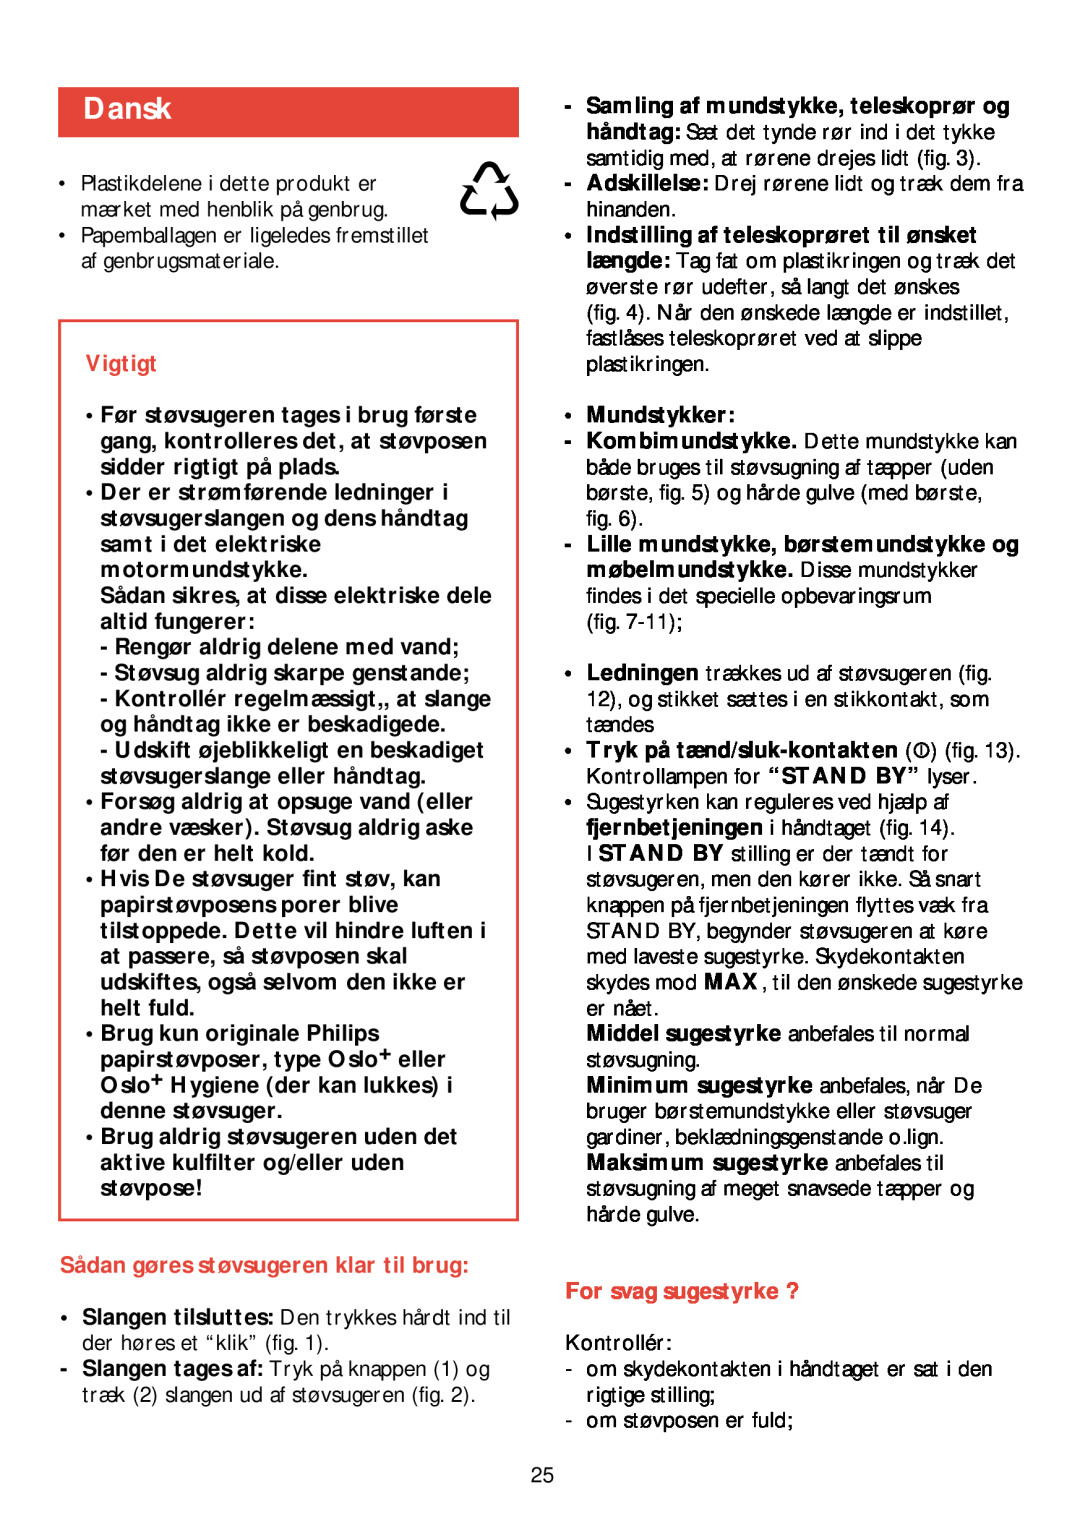 Philips HR 6988 manual Dansk, Vigtigt, Sådan gøres støvsugeren klar til brug, For svag sugestyrke ? 